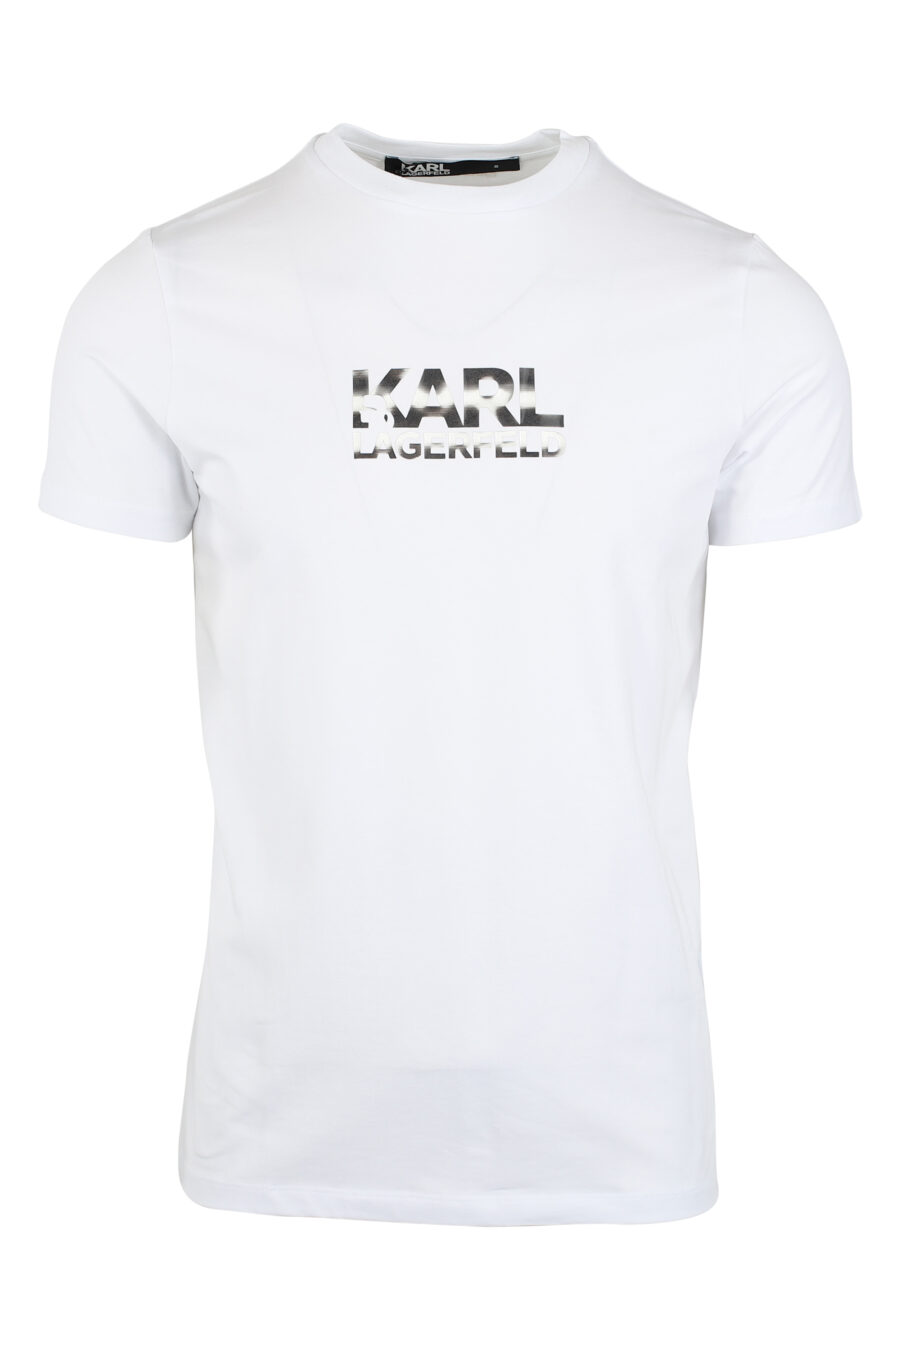 T-shirt blanc avec logo à effet holographique - IMG 9485